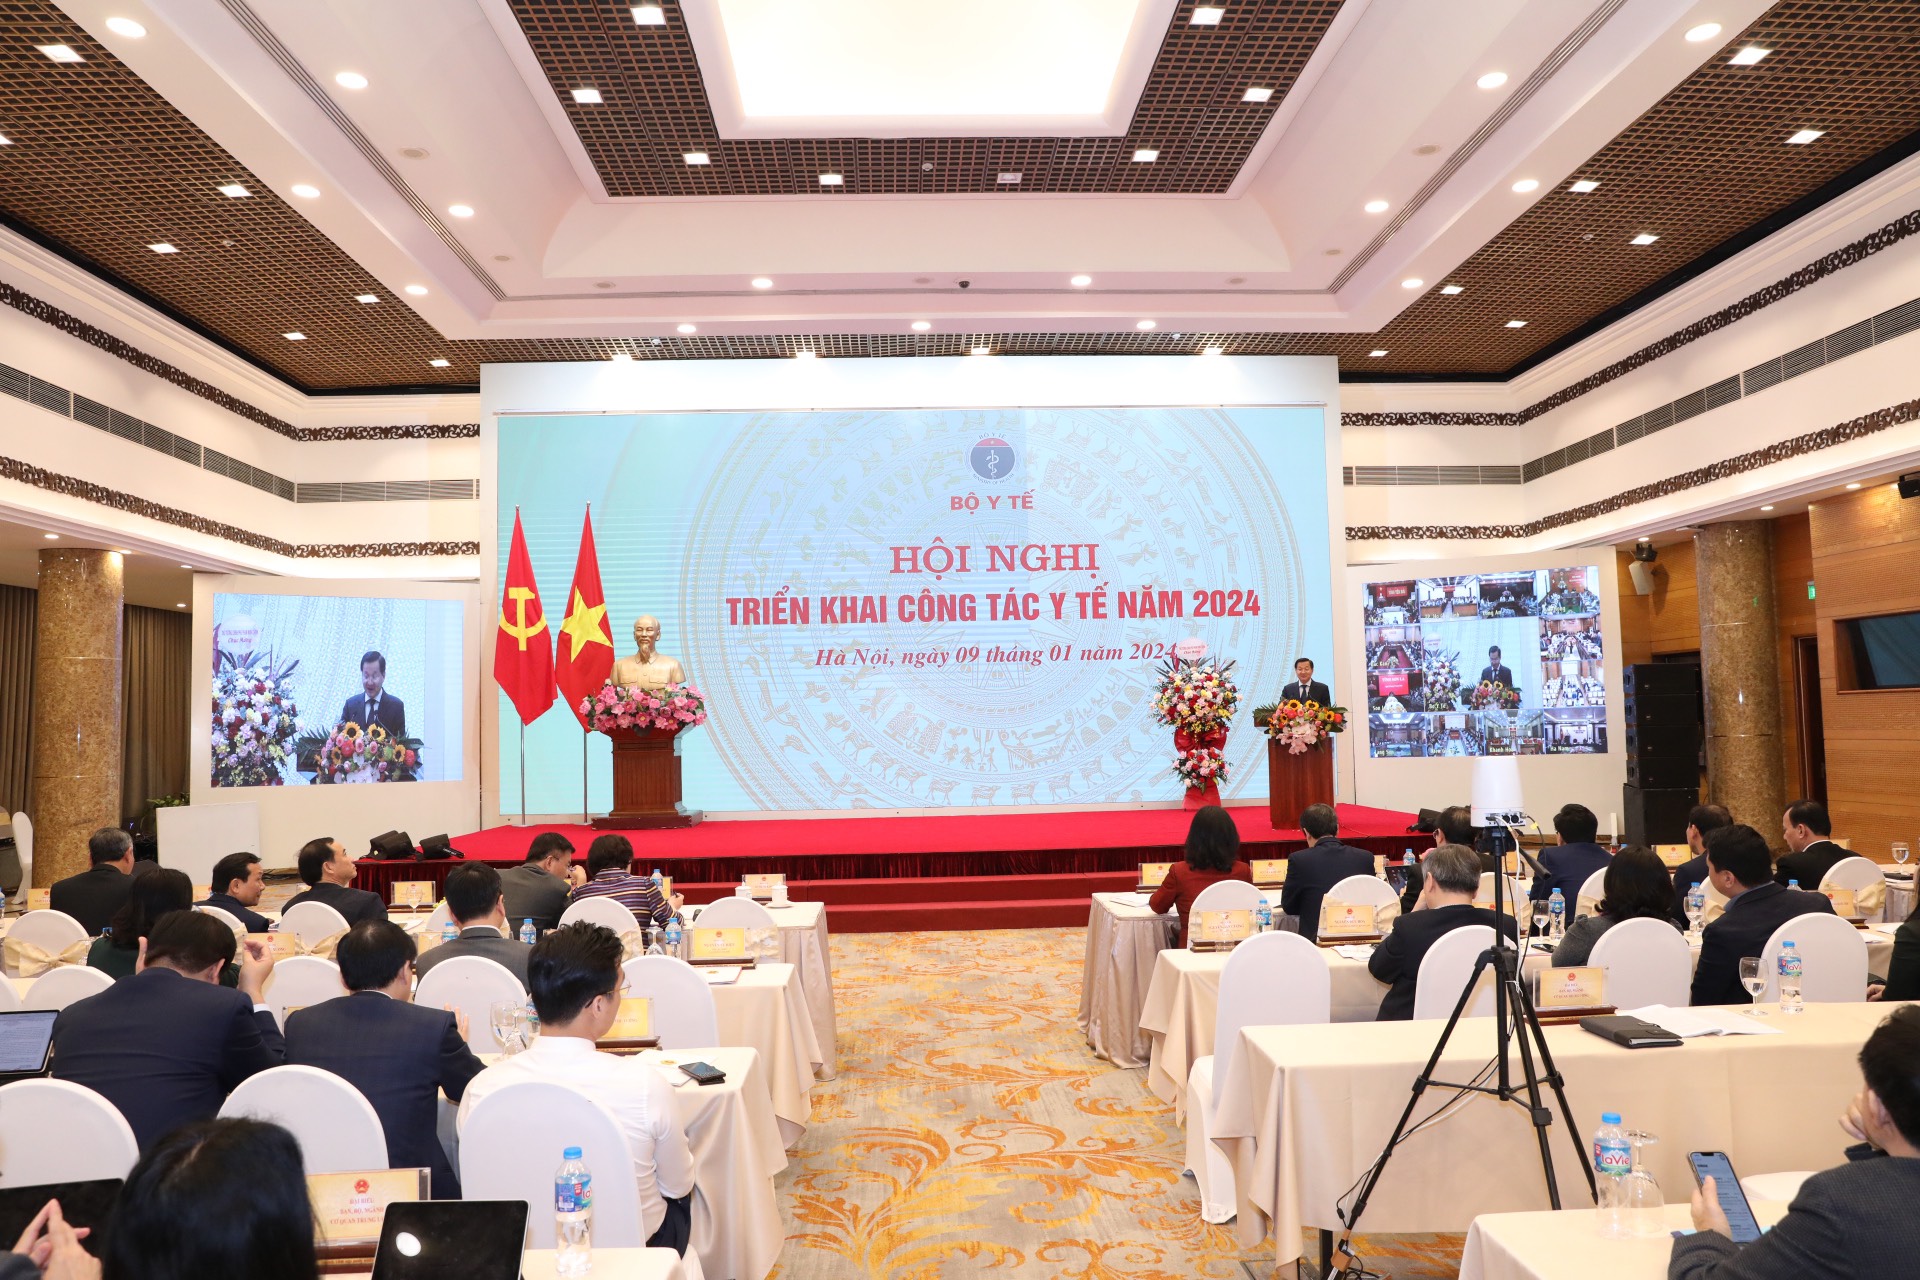 Phó Thủ tướng Lê Minh Khái trước nhiều khó khăn, ngành y vẫn đạt nhiều kết quả nổi bật trong năm 2023. Ảnh: VGP